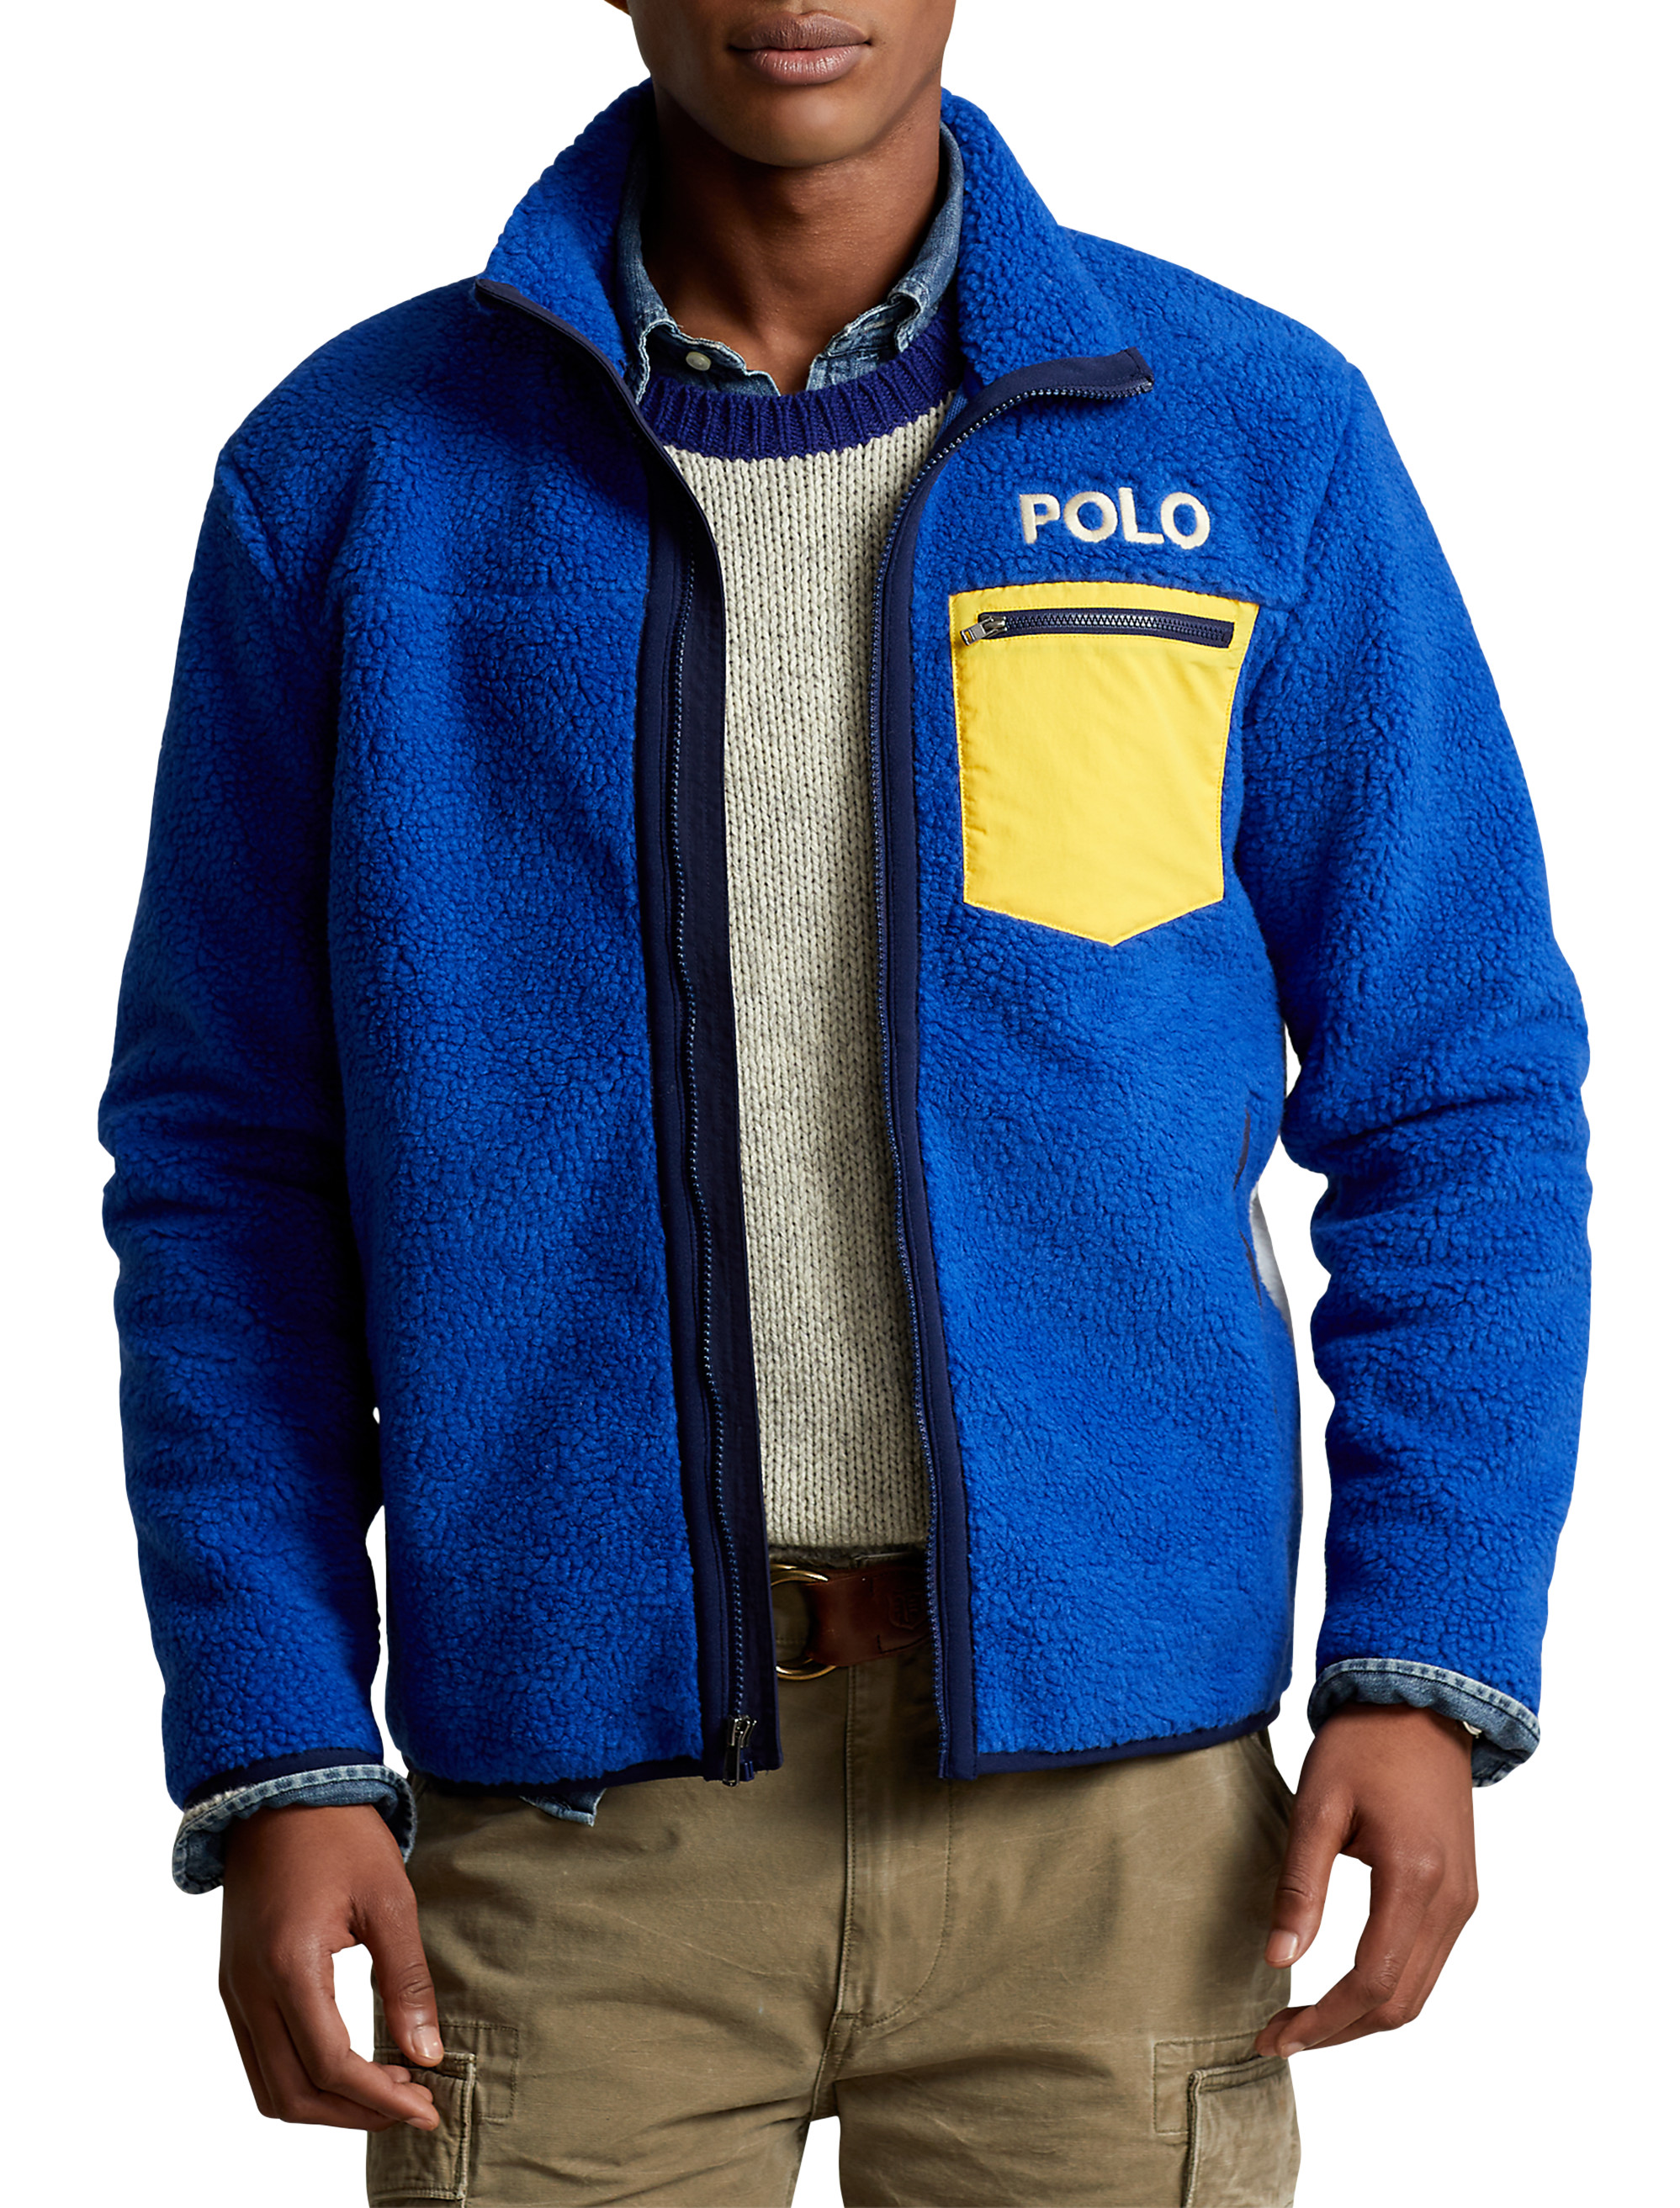 Big + Tall | Polo Ralph Lauren Sun Valley Hybrid Fleece Jacket | DXL